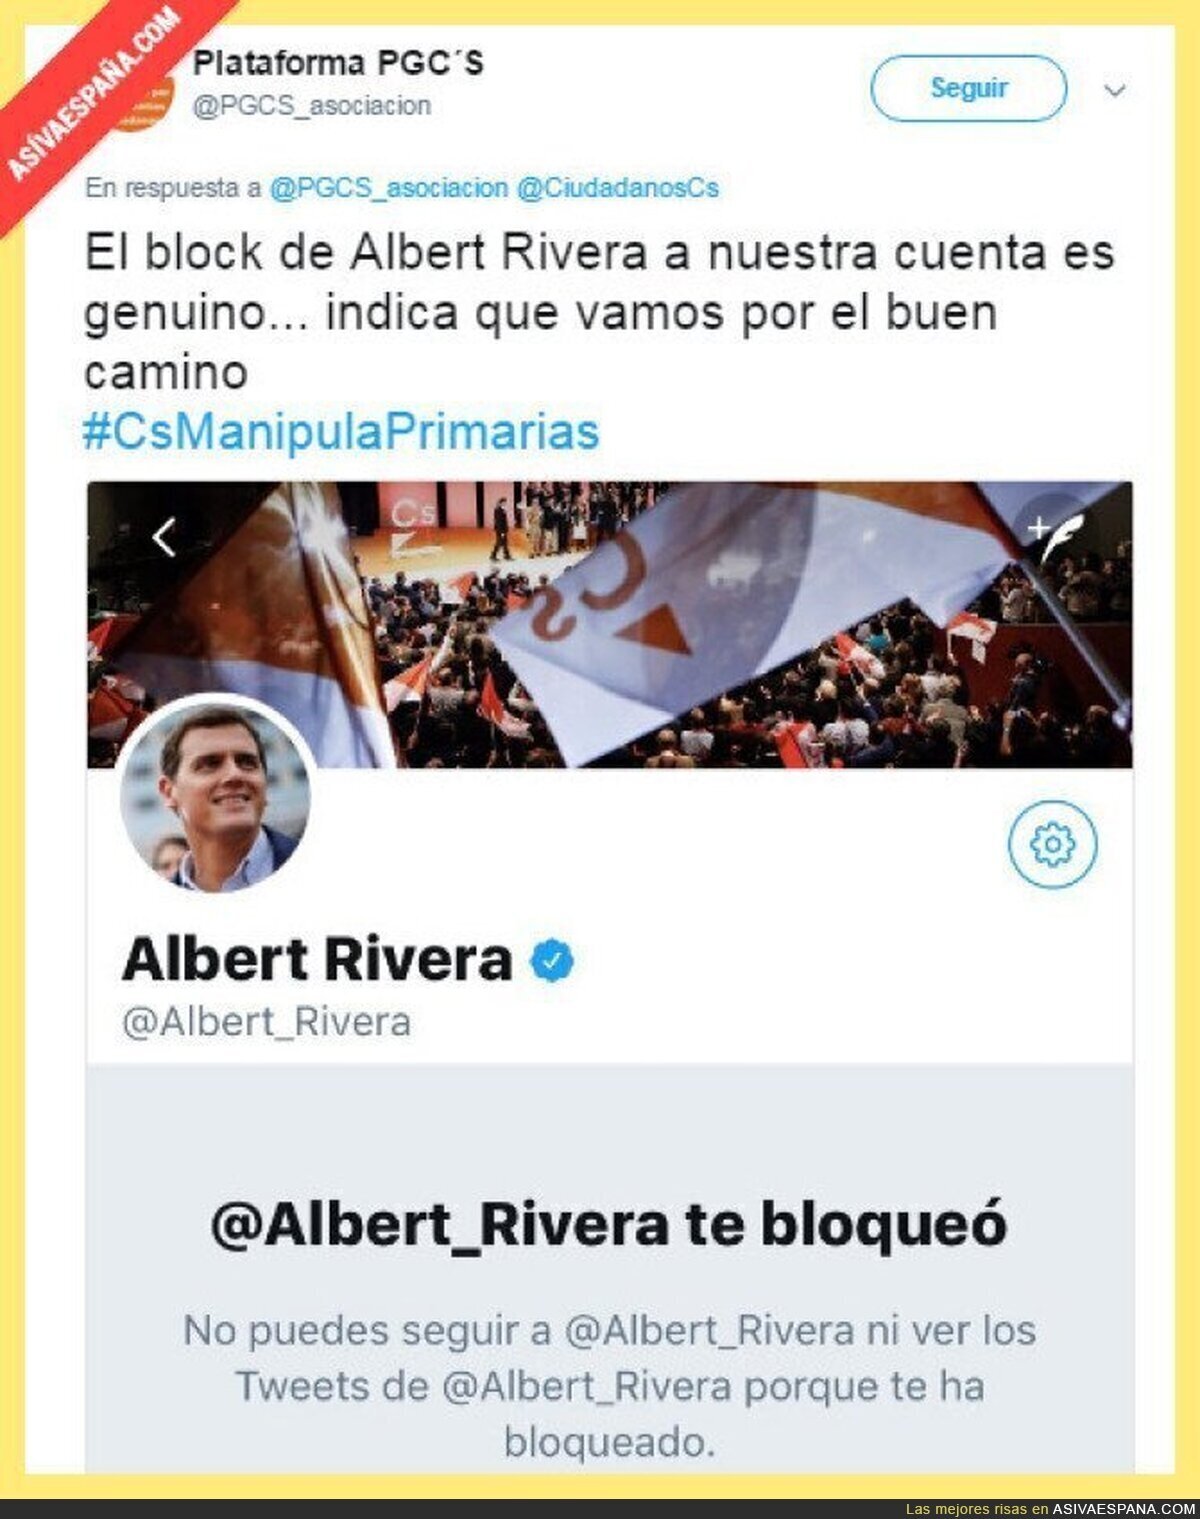 Albert Rivera bloquea a los que piden garantías democráticas en Ciudadanos